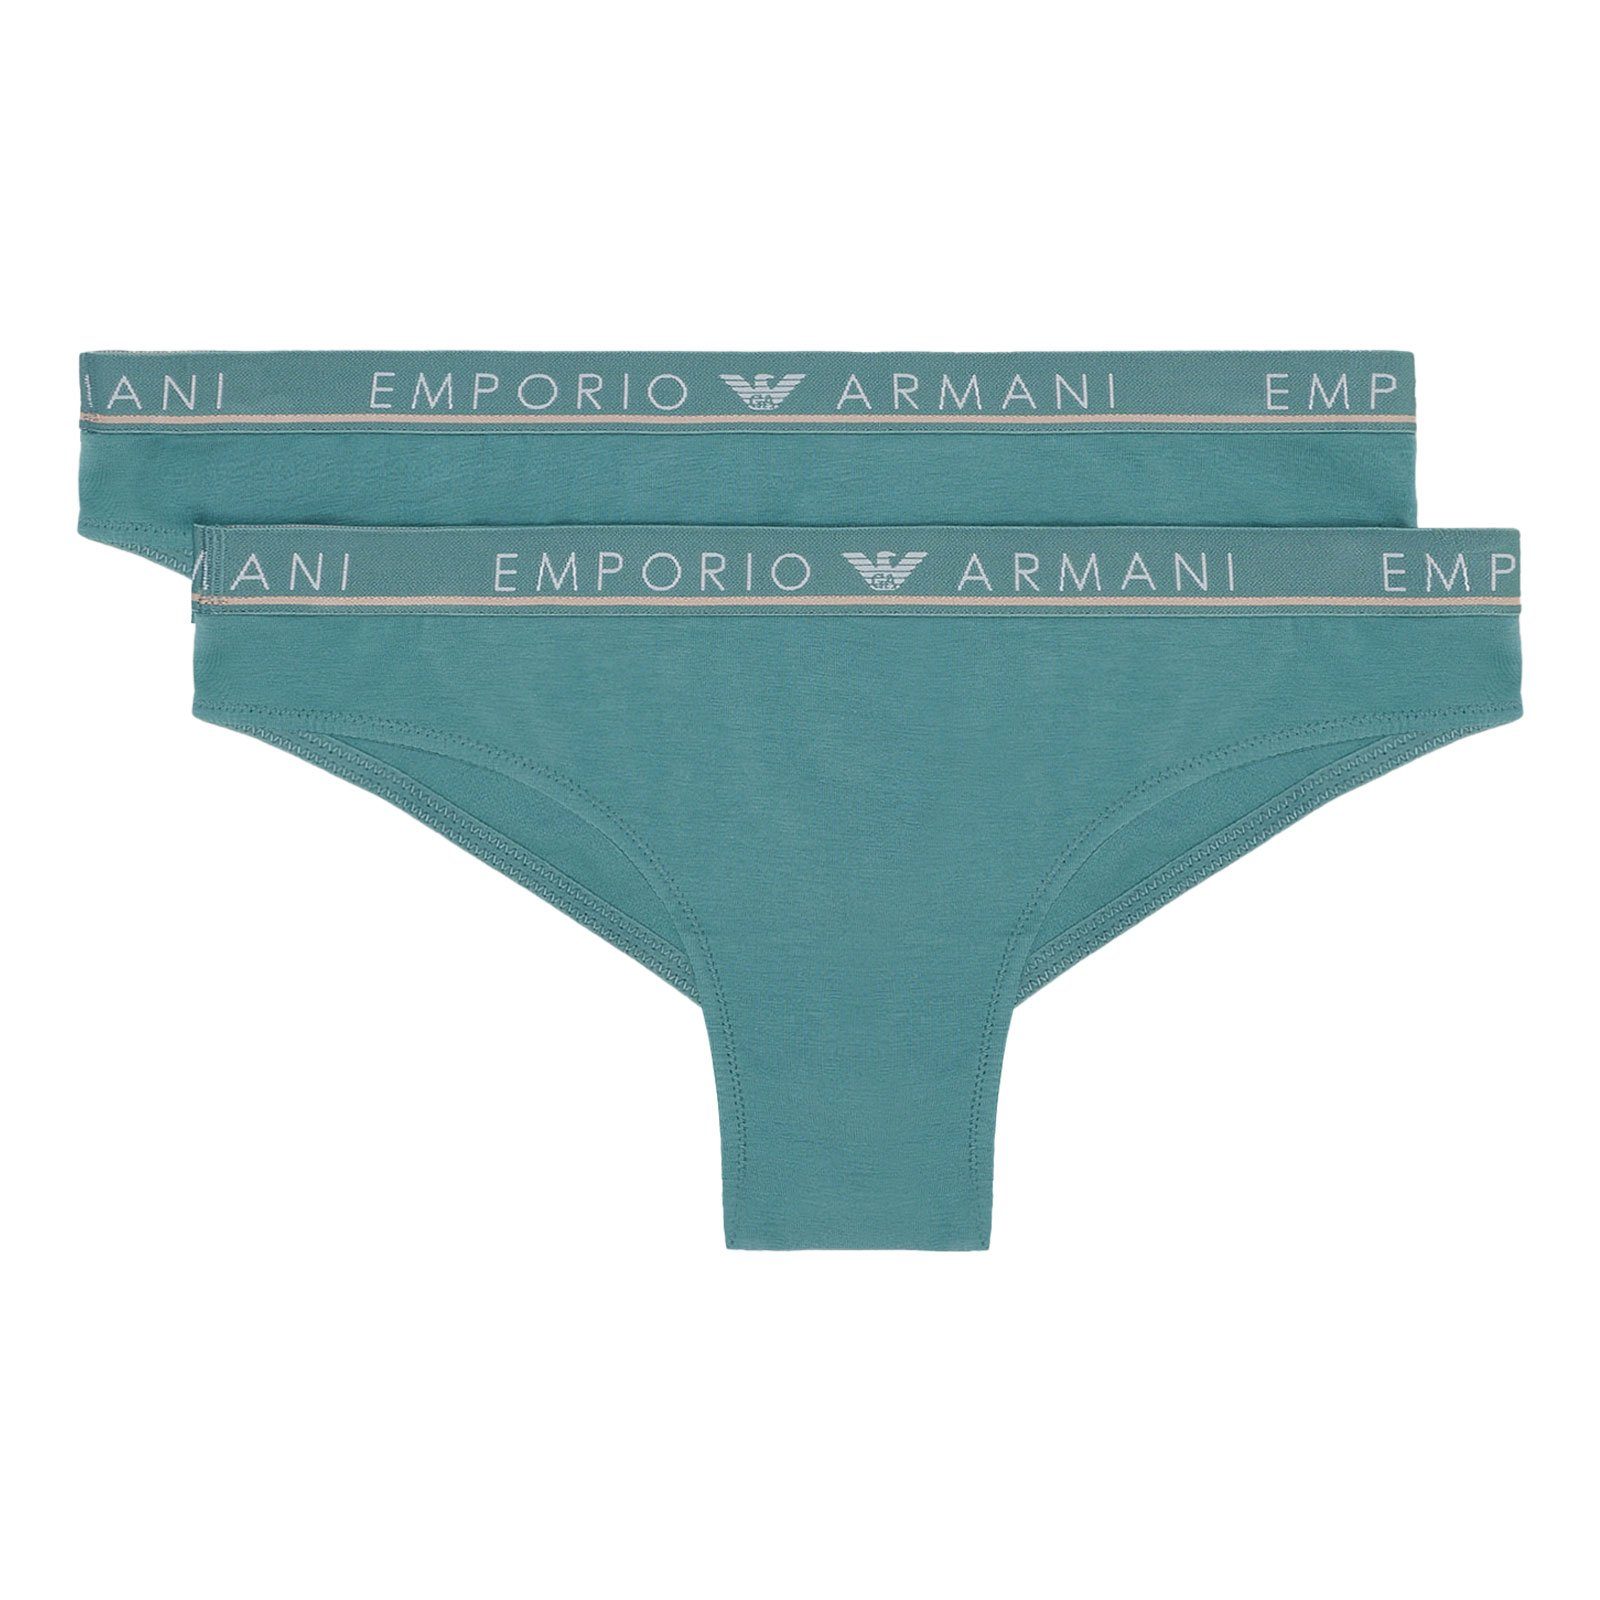 Emporio Armani Brasilslip Brazilian Brief Stretch Cotton (2-St., enthält 2  gleichfarbige Slips) mit umlaufenden Markenschriftzügen